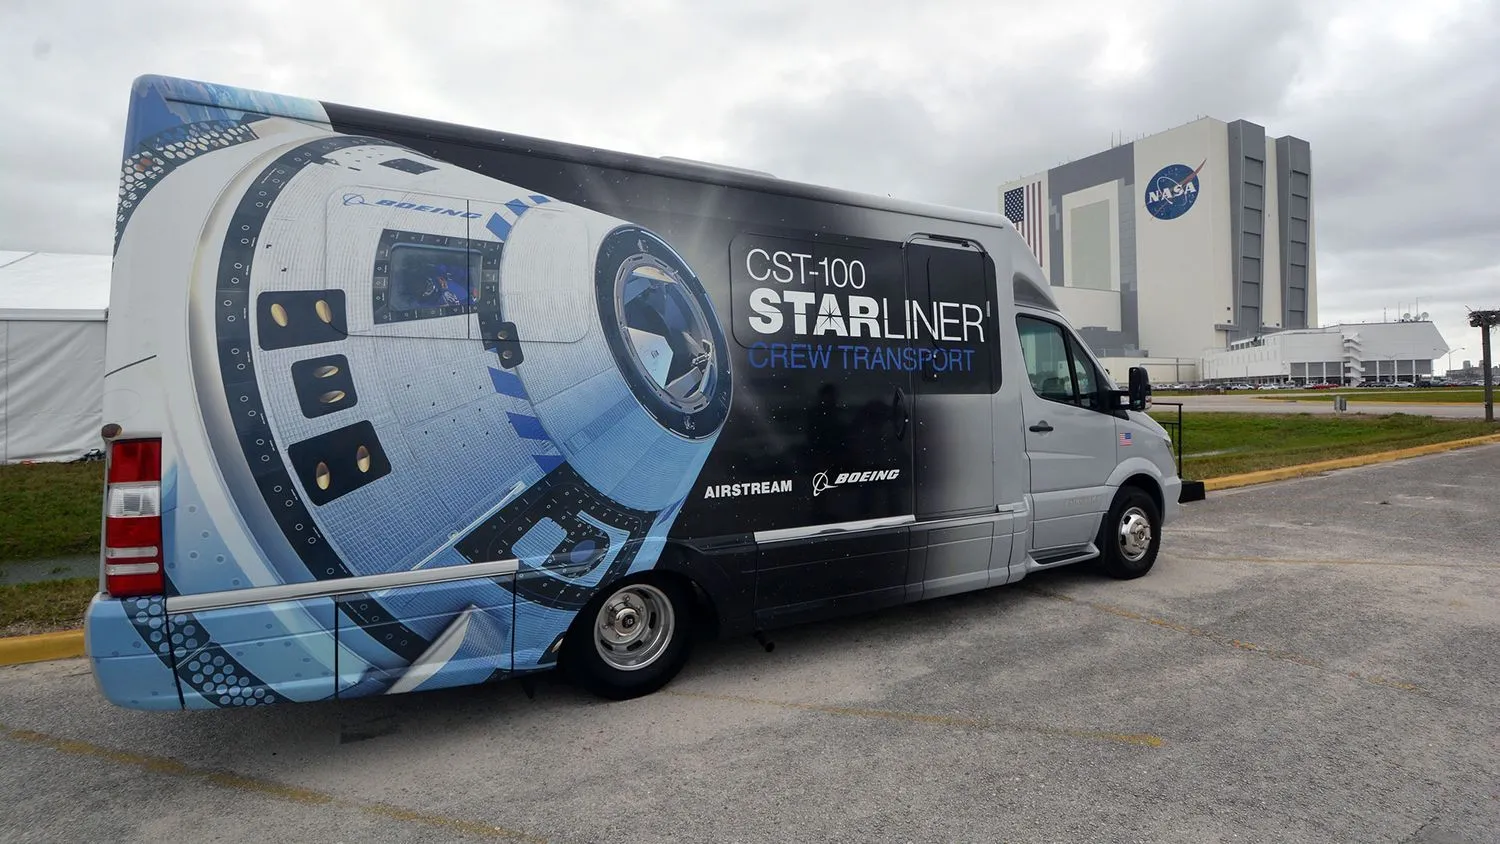 Mehr über den Artikel erfahren Ihr anderes Fahrzeug ist der Starliner: Boeings erste Crew, die mit der Astrovan II zur Startrampe fährt